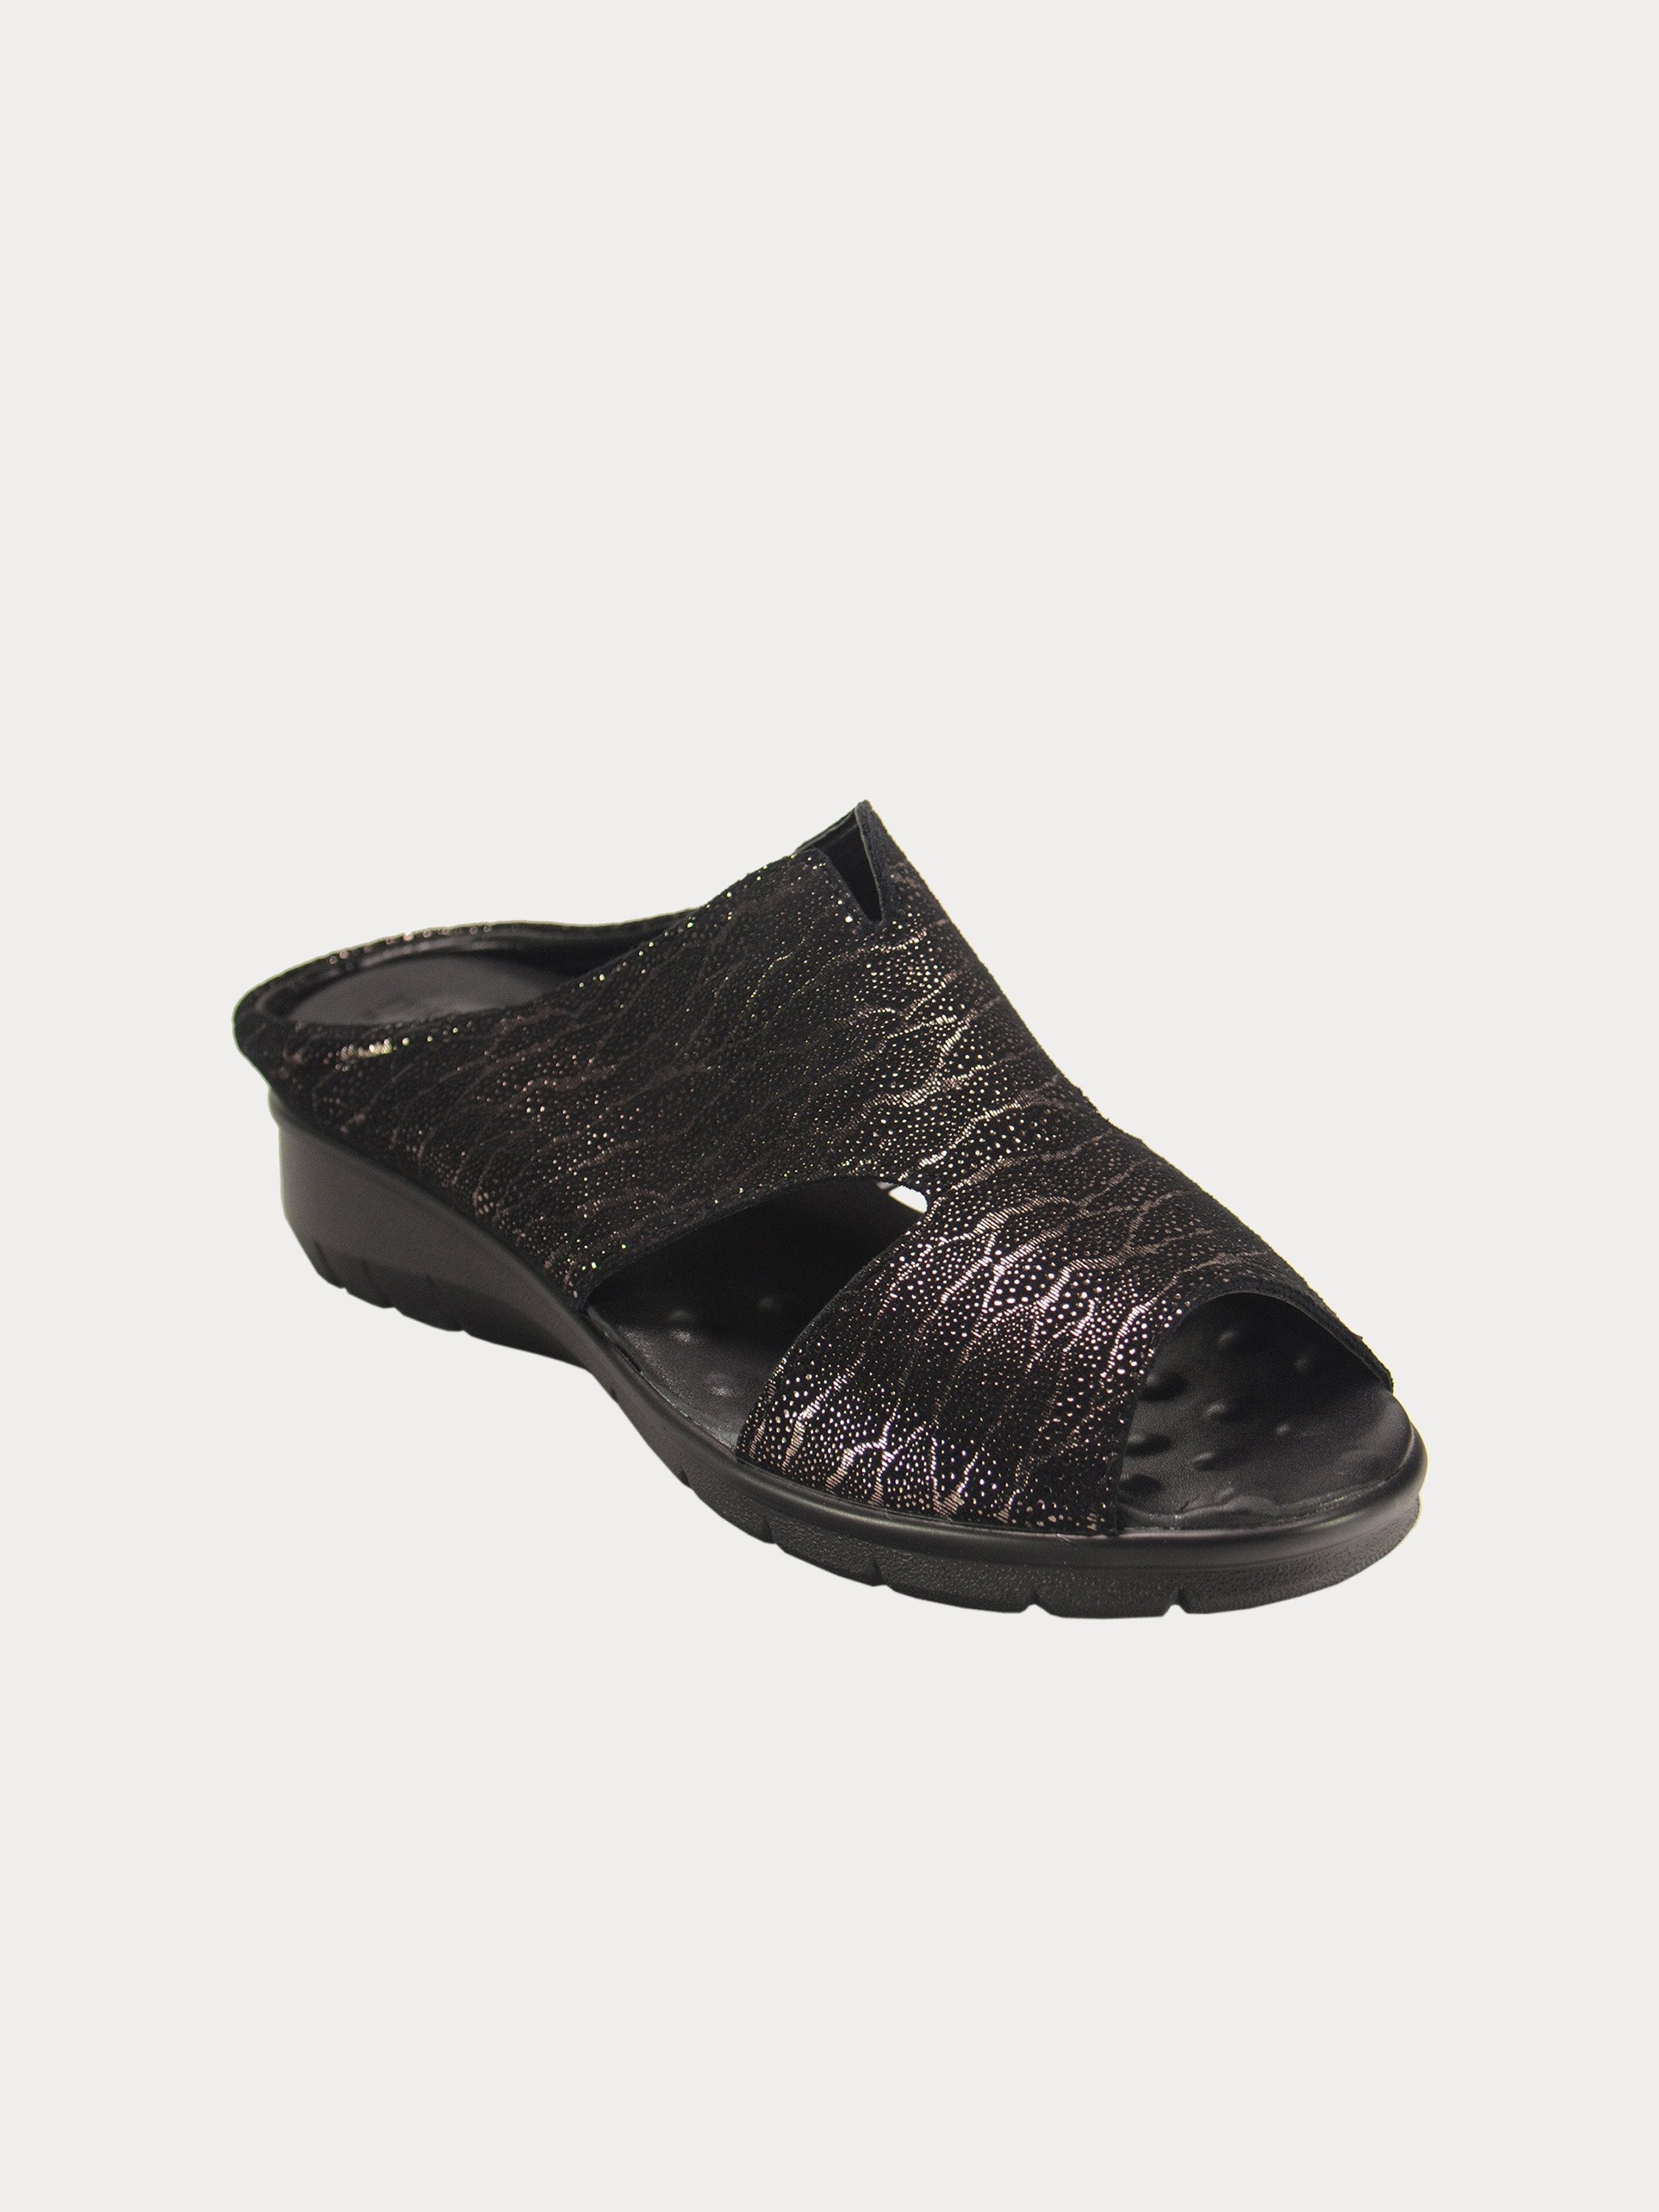 Michelle Morgan 1839715 Rustic Print Slider Sandals #color_Grey